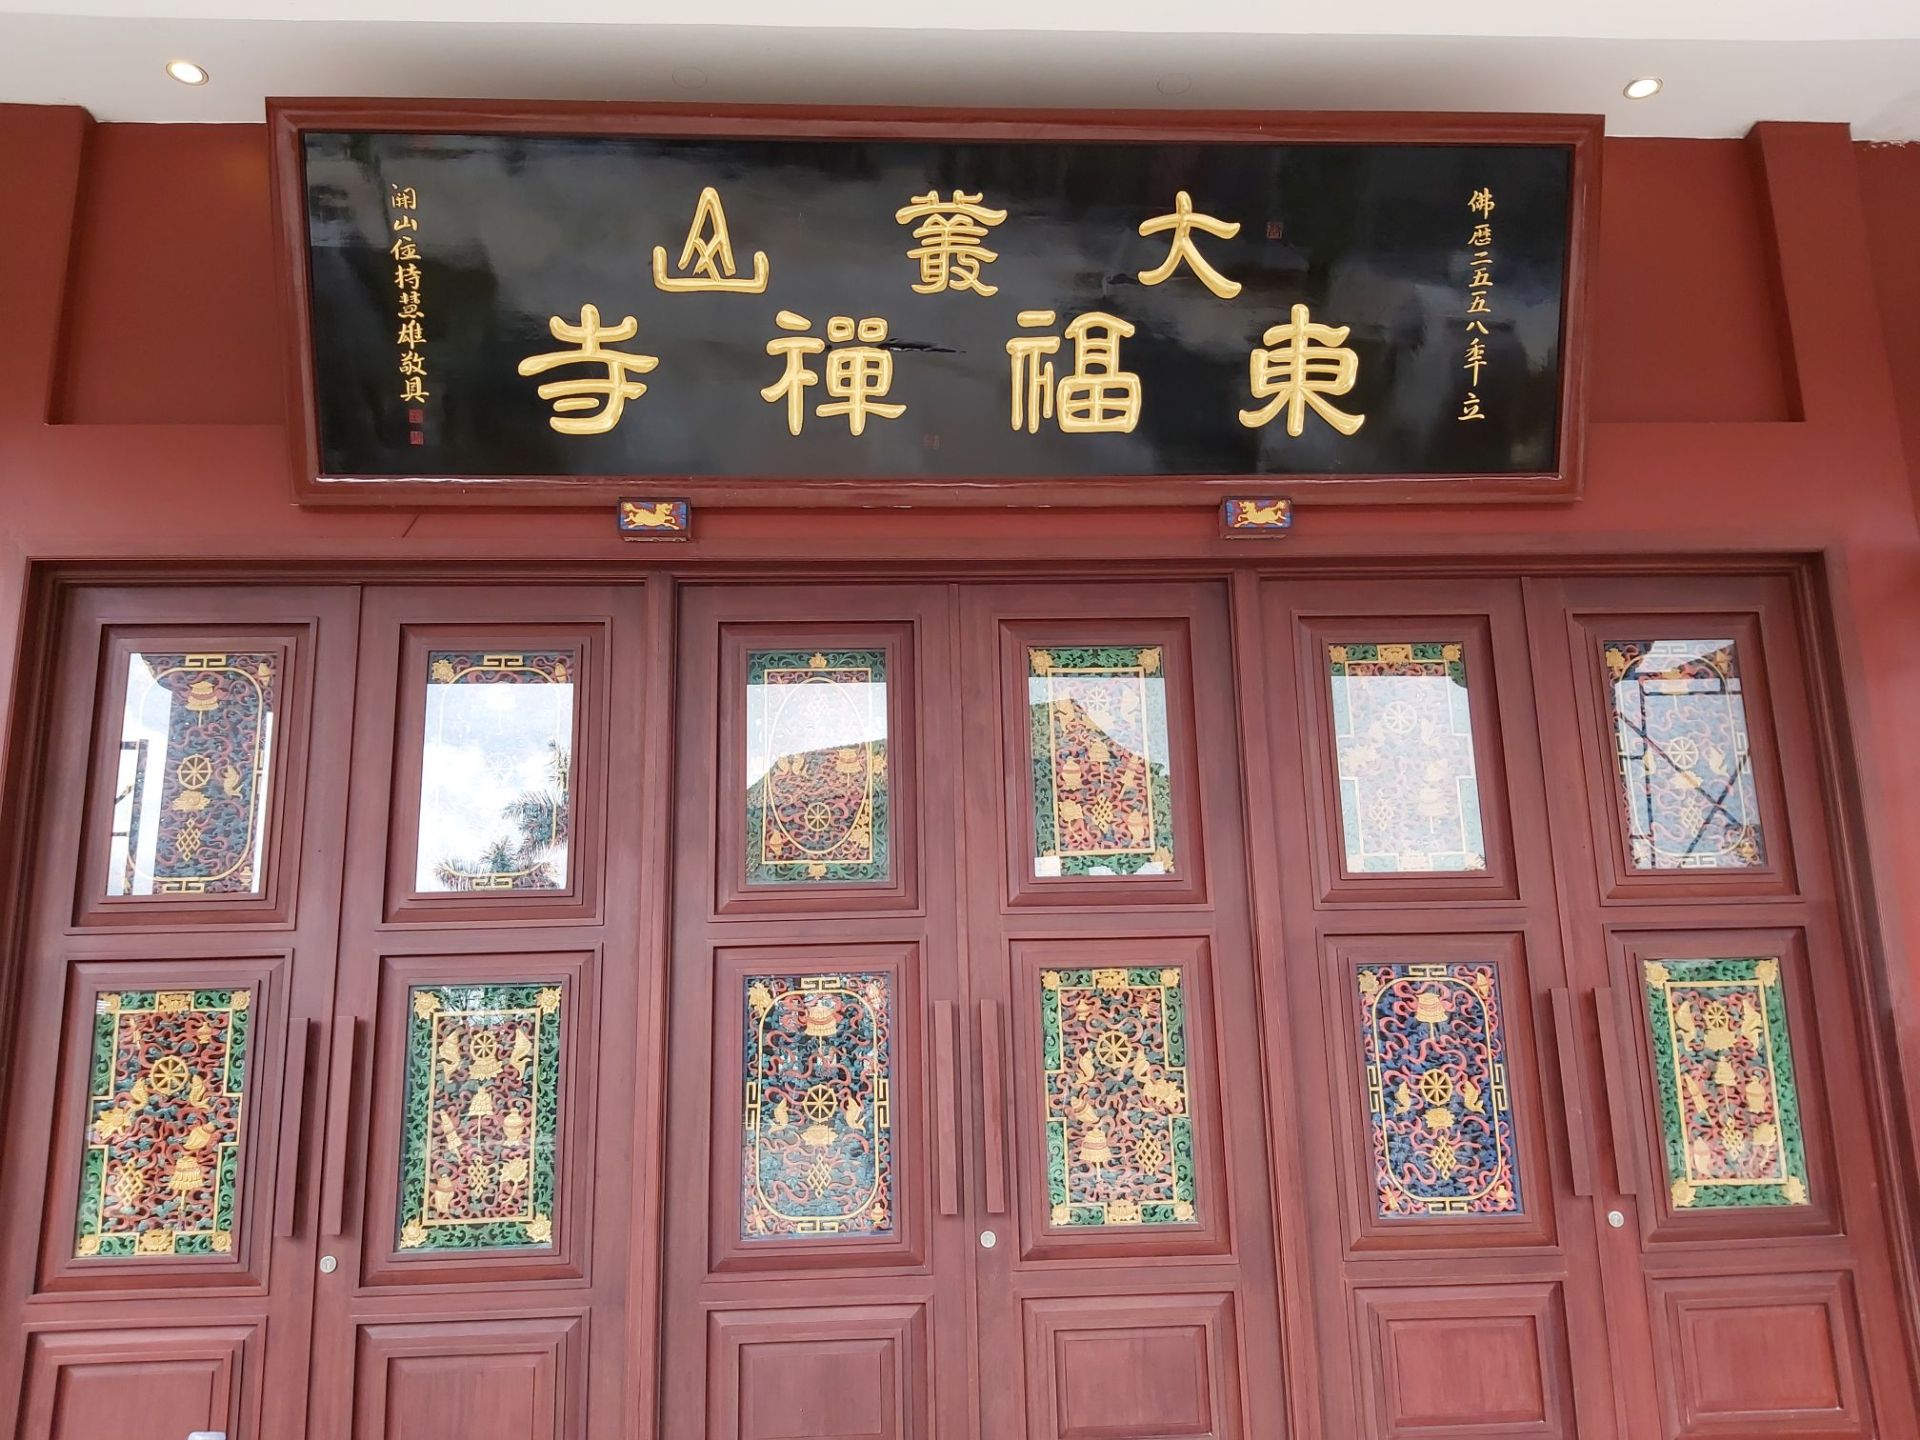 2019-12-15 坤甸市 大叢山東福禪寺佛寺啟用與佛像開光。是西加里曼丹省新增祈福禮佛的聖地。主